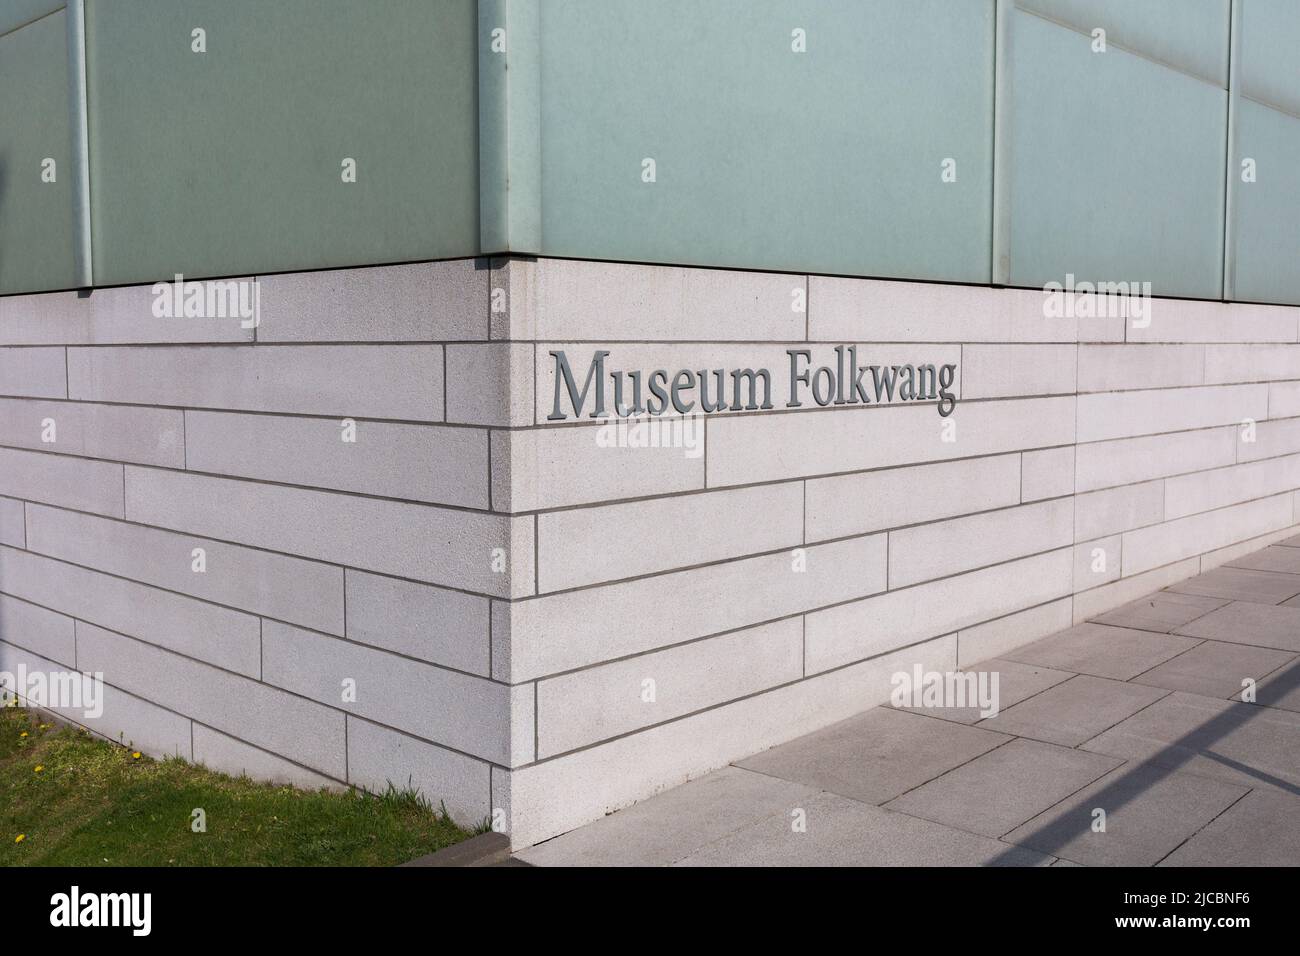 Essen, Allemagne - 25 mars 2022 : Musée d'écriture Folkwang, près de l'entrée du célèbre musée d'art. Banque D'Images